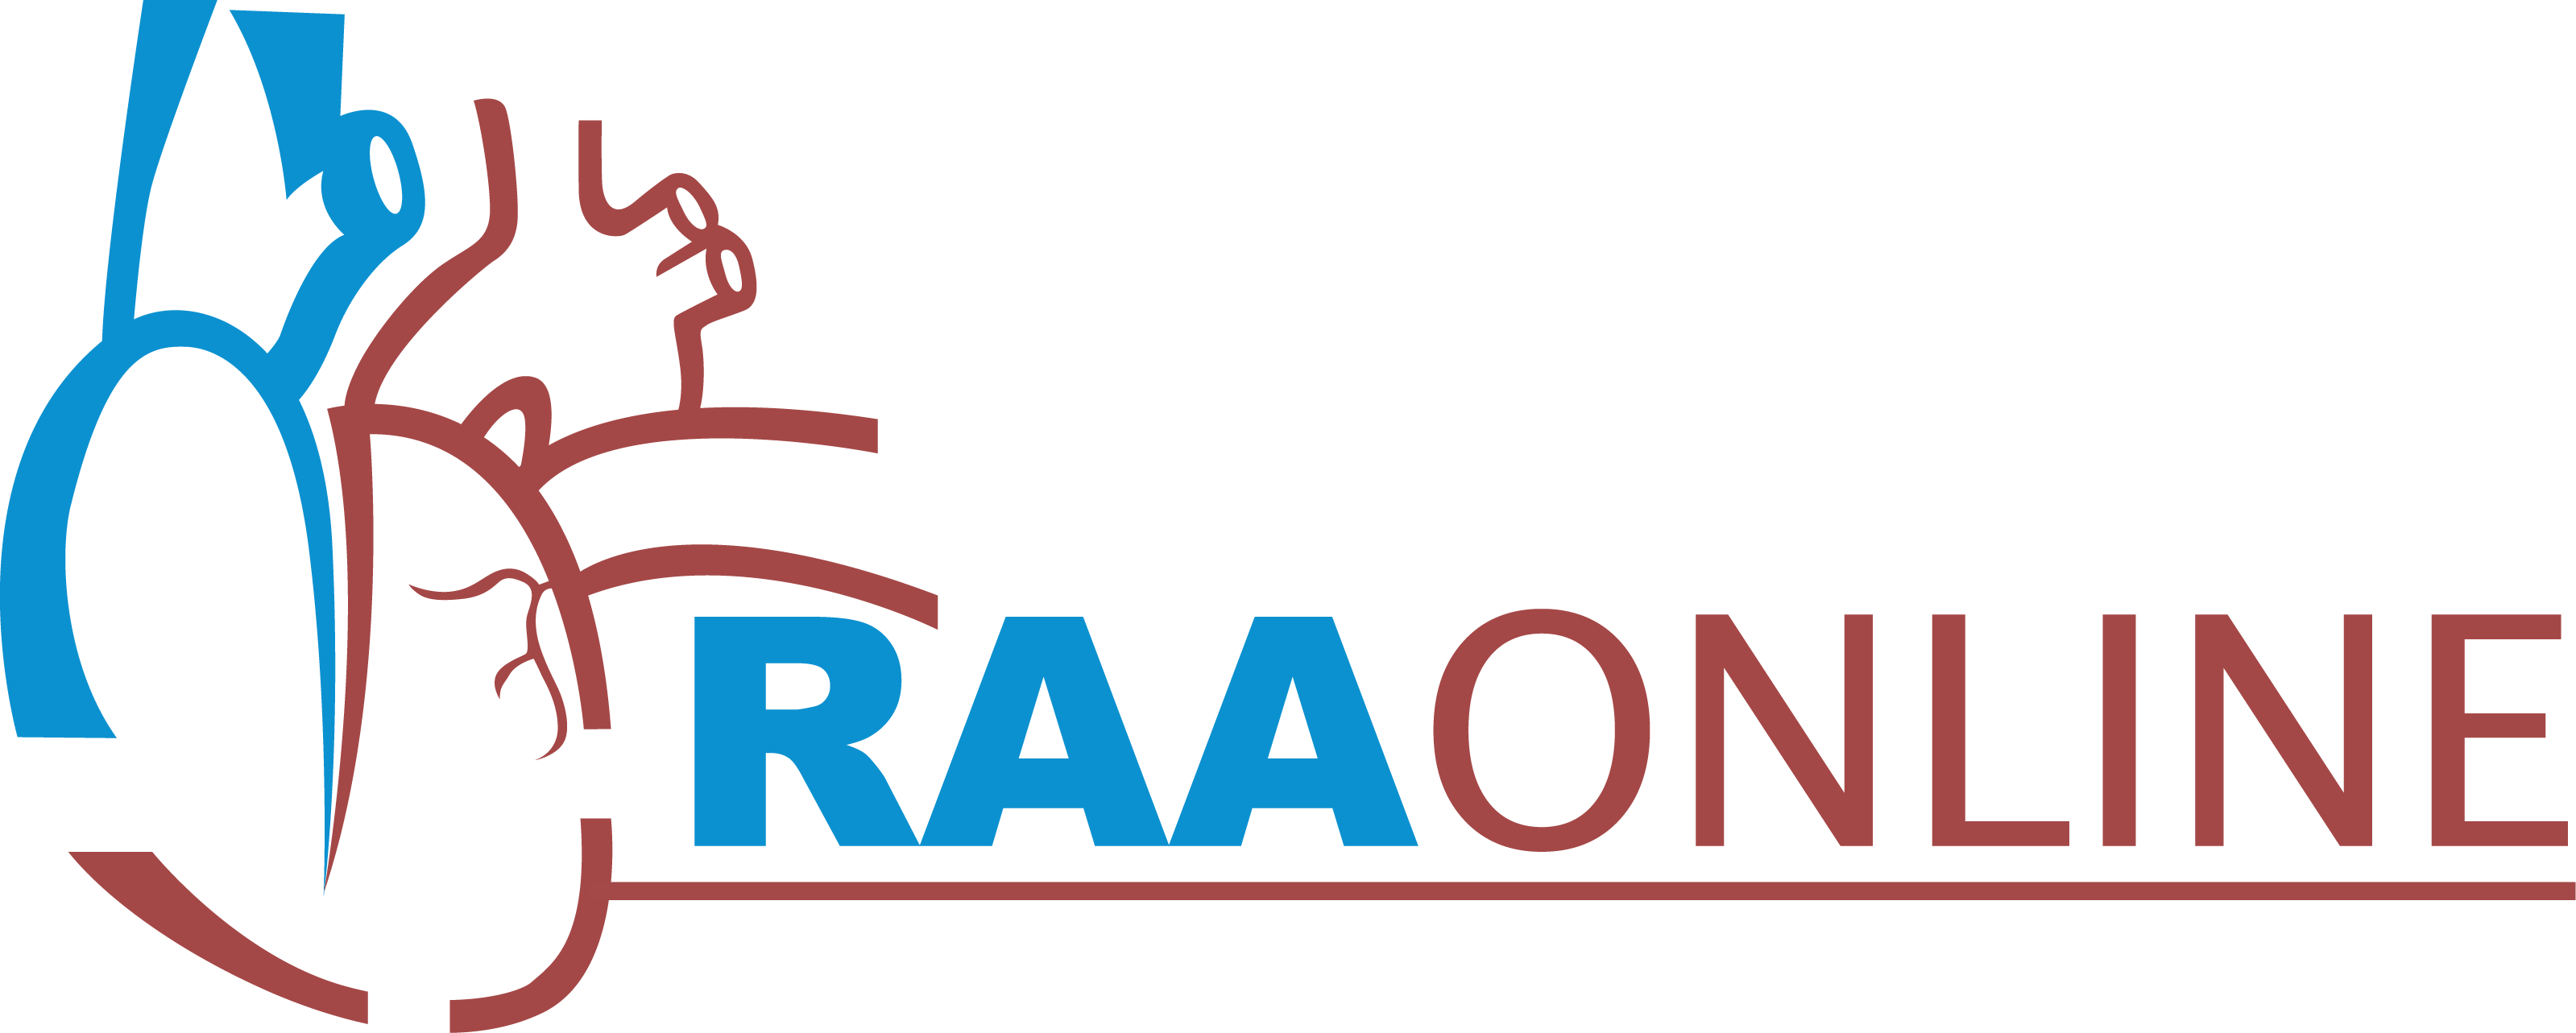 Raaonlie logo